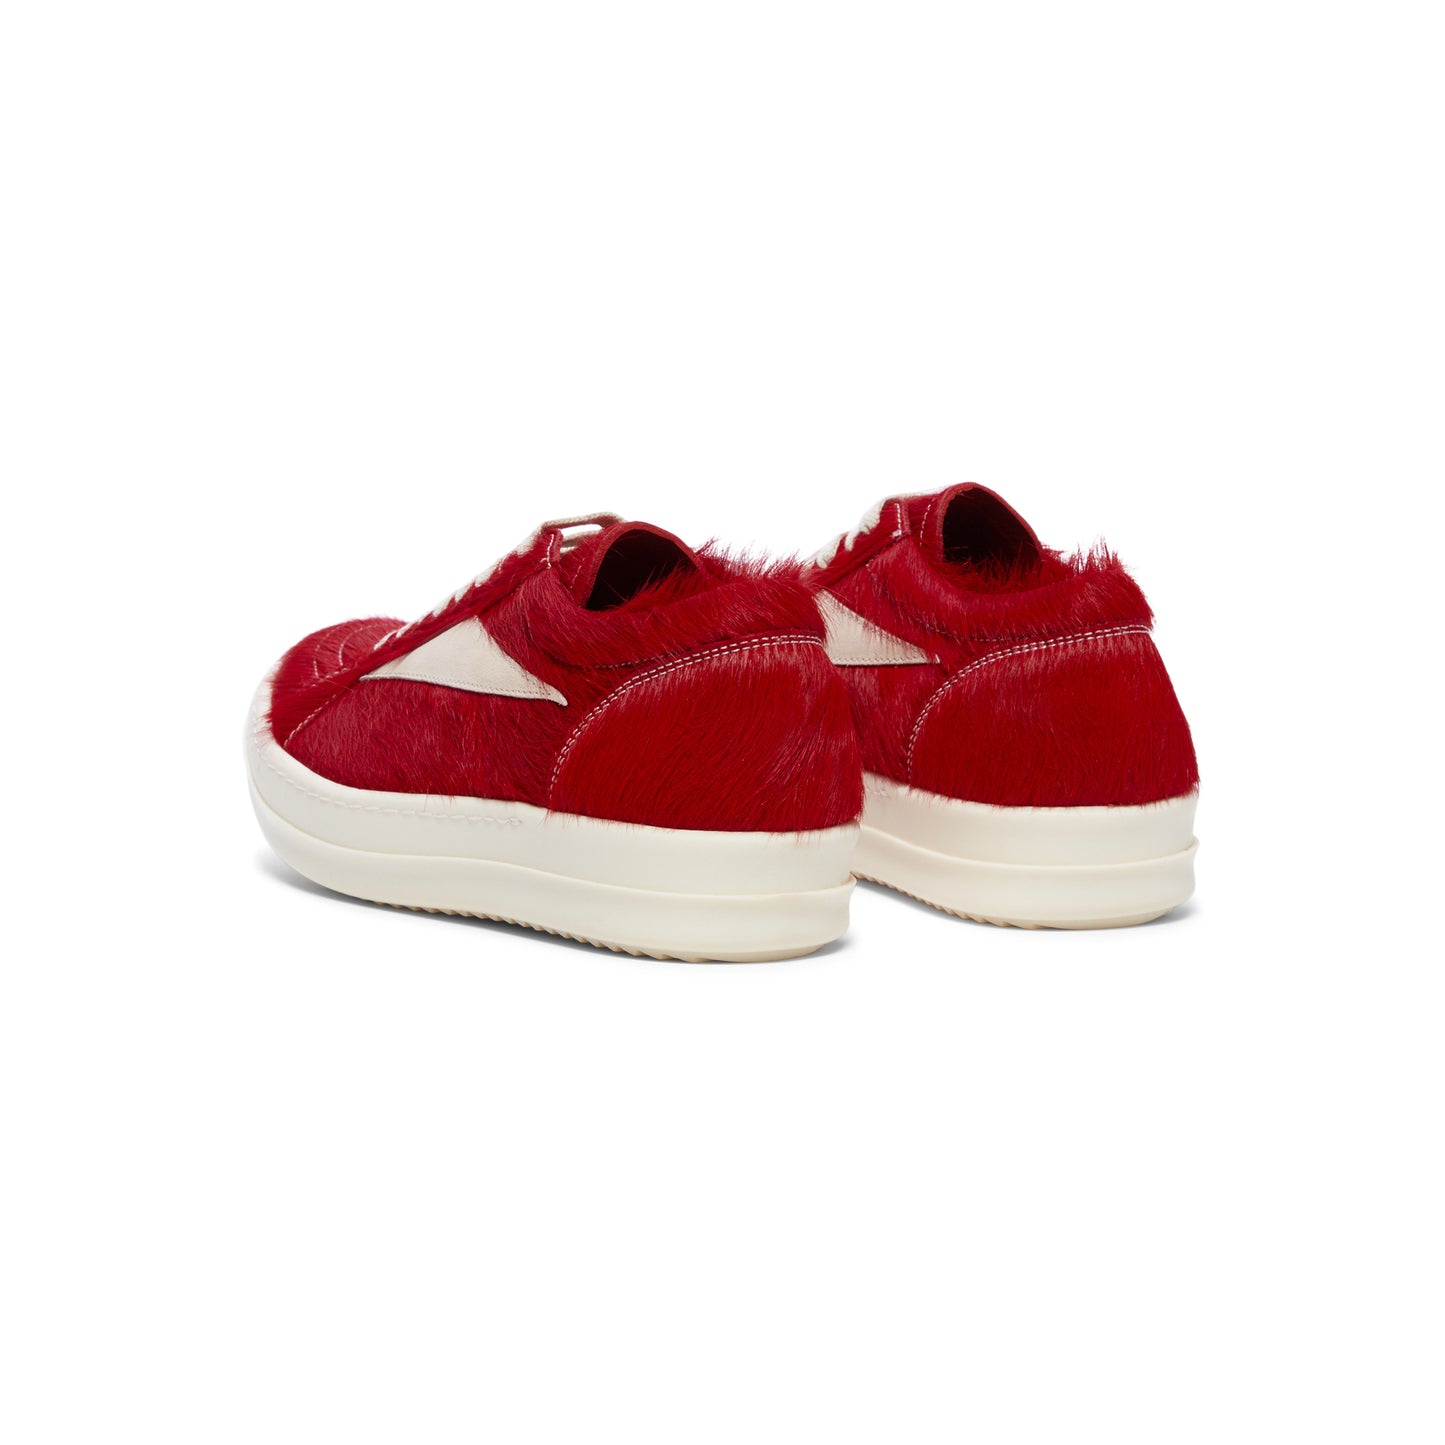 Rick Owens Vintage Sneakers (Cardinal Red/Milk)